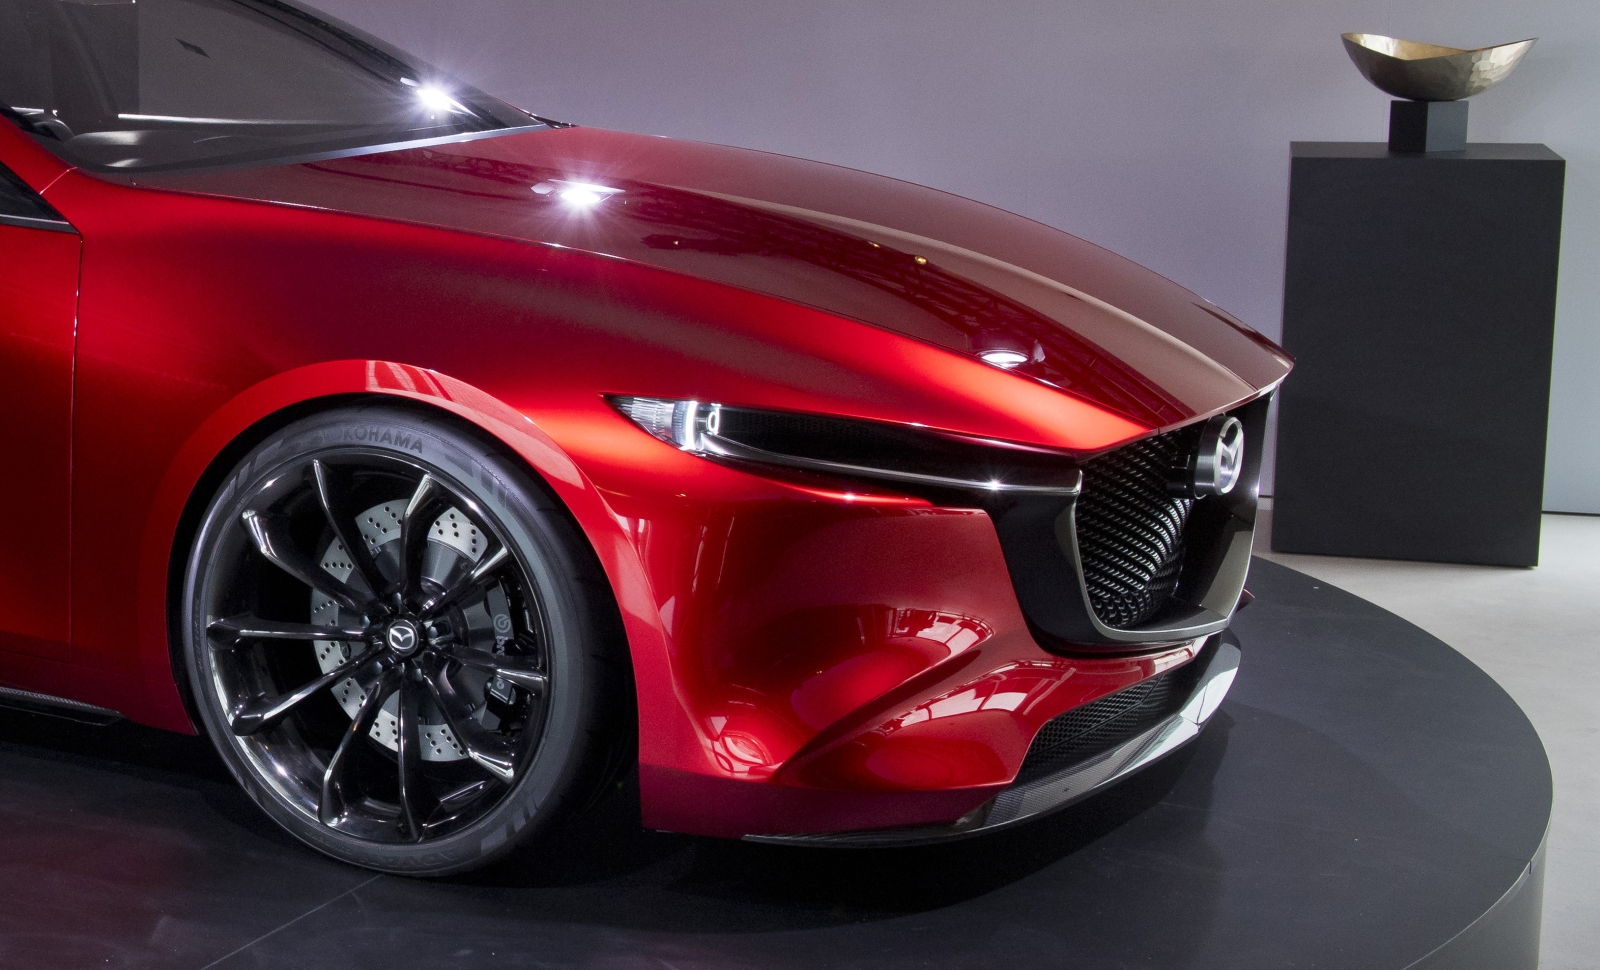 Mazda S Elektrische Auto Krijgt Optioneel Wankelmotor Als Range Extender